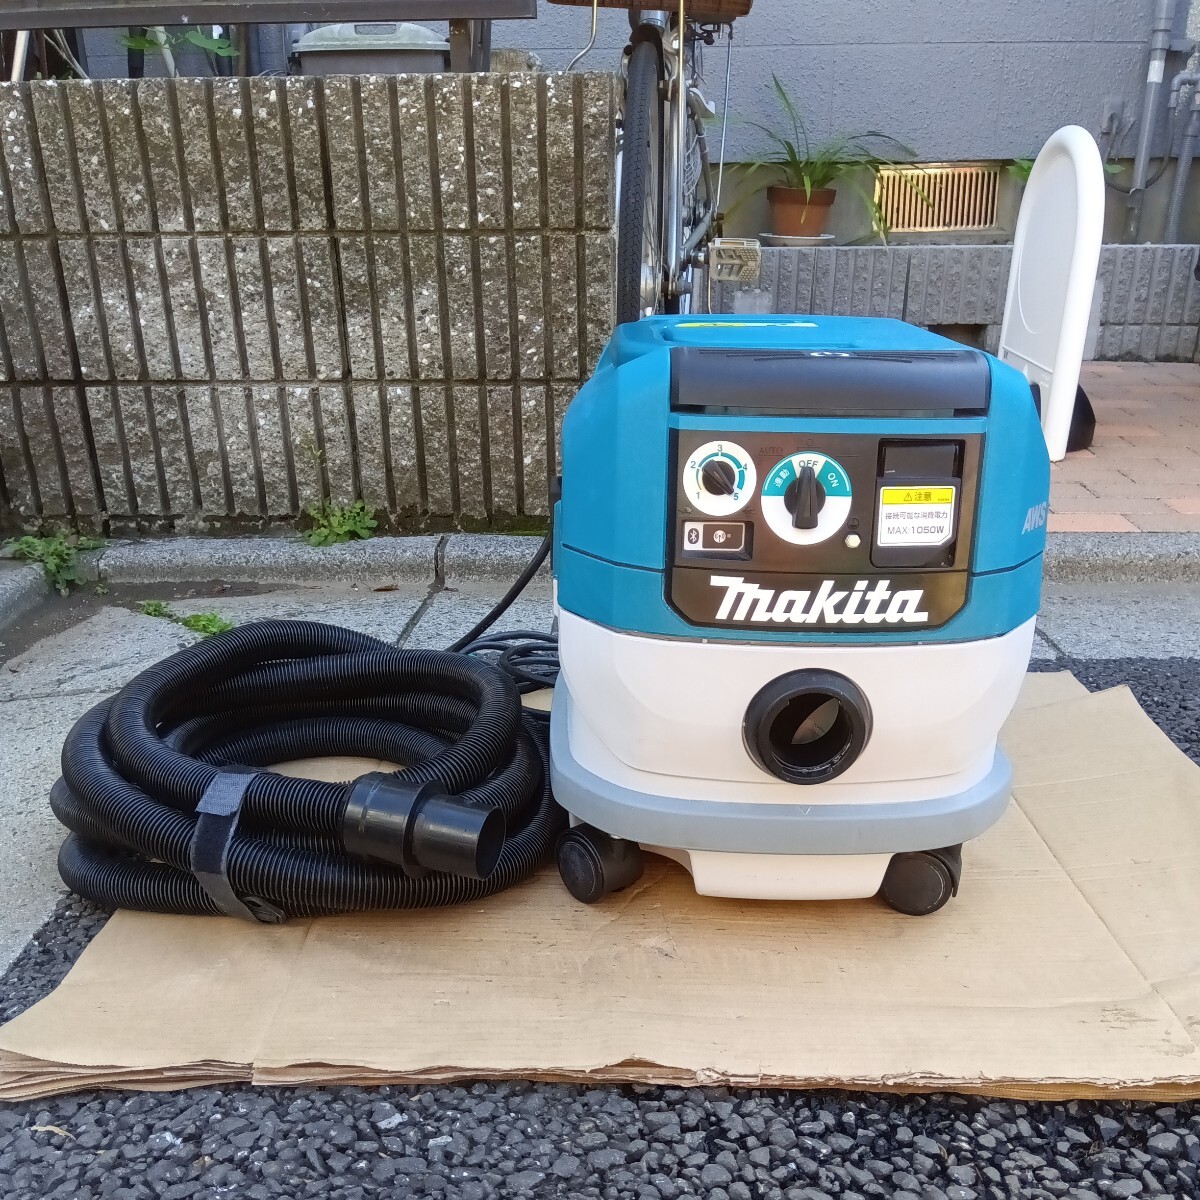 * самовывоз..!!! * быстрое решение 34000 иен * прекрасный товар VC0840 Makita MAKITA сборник .. машина ..... машина 